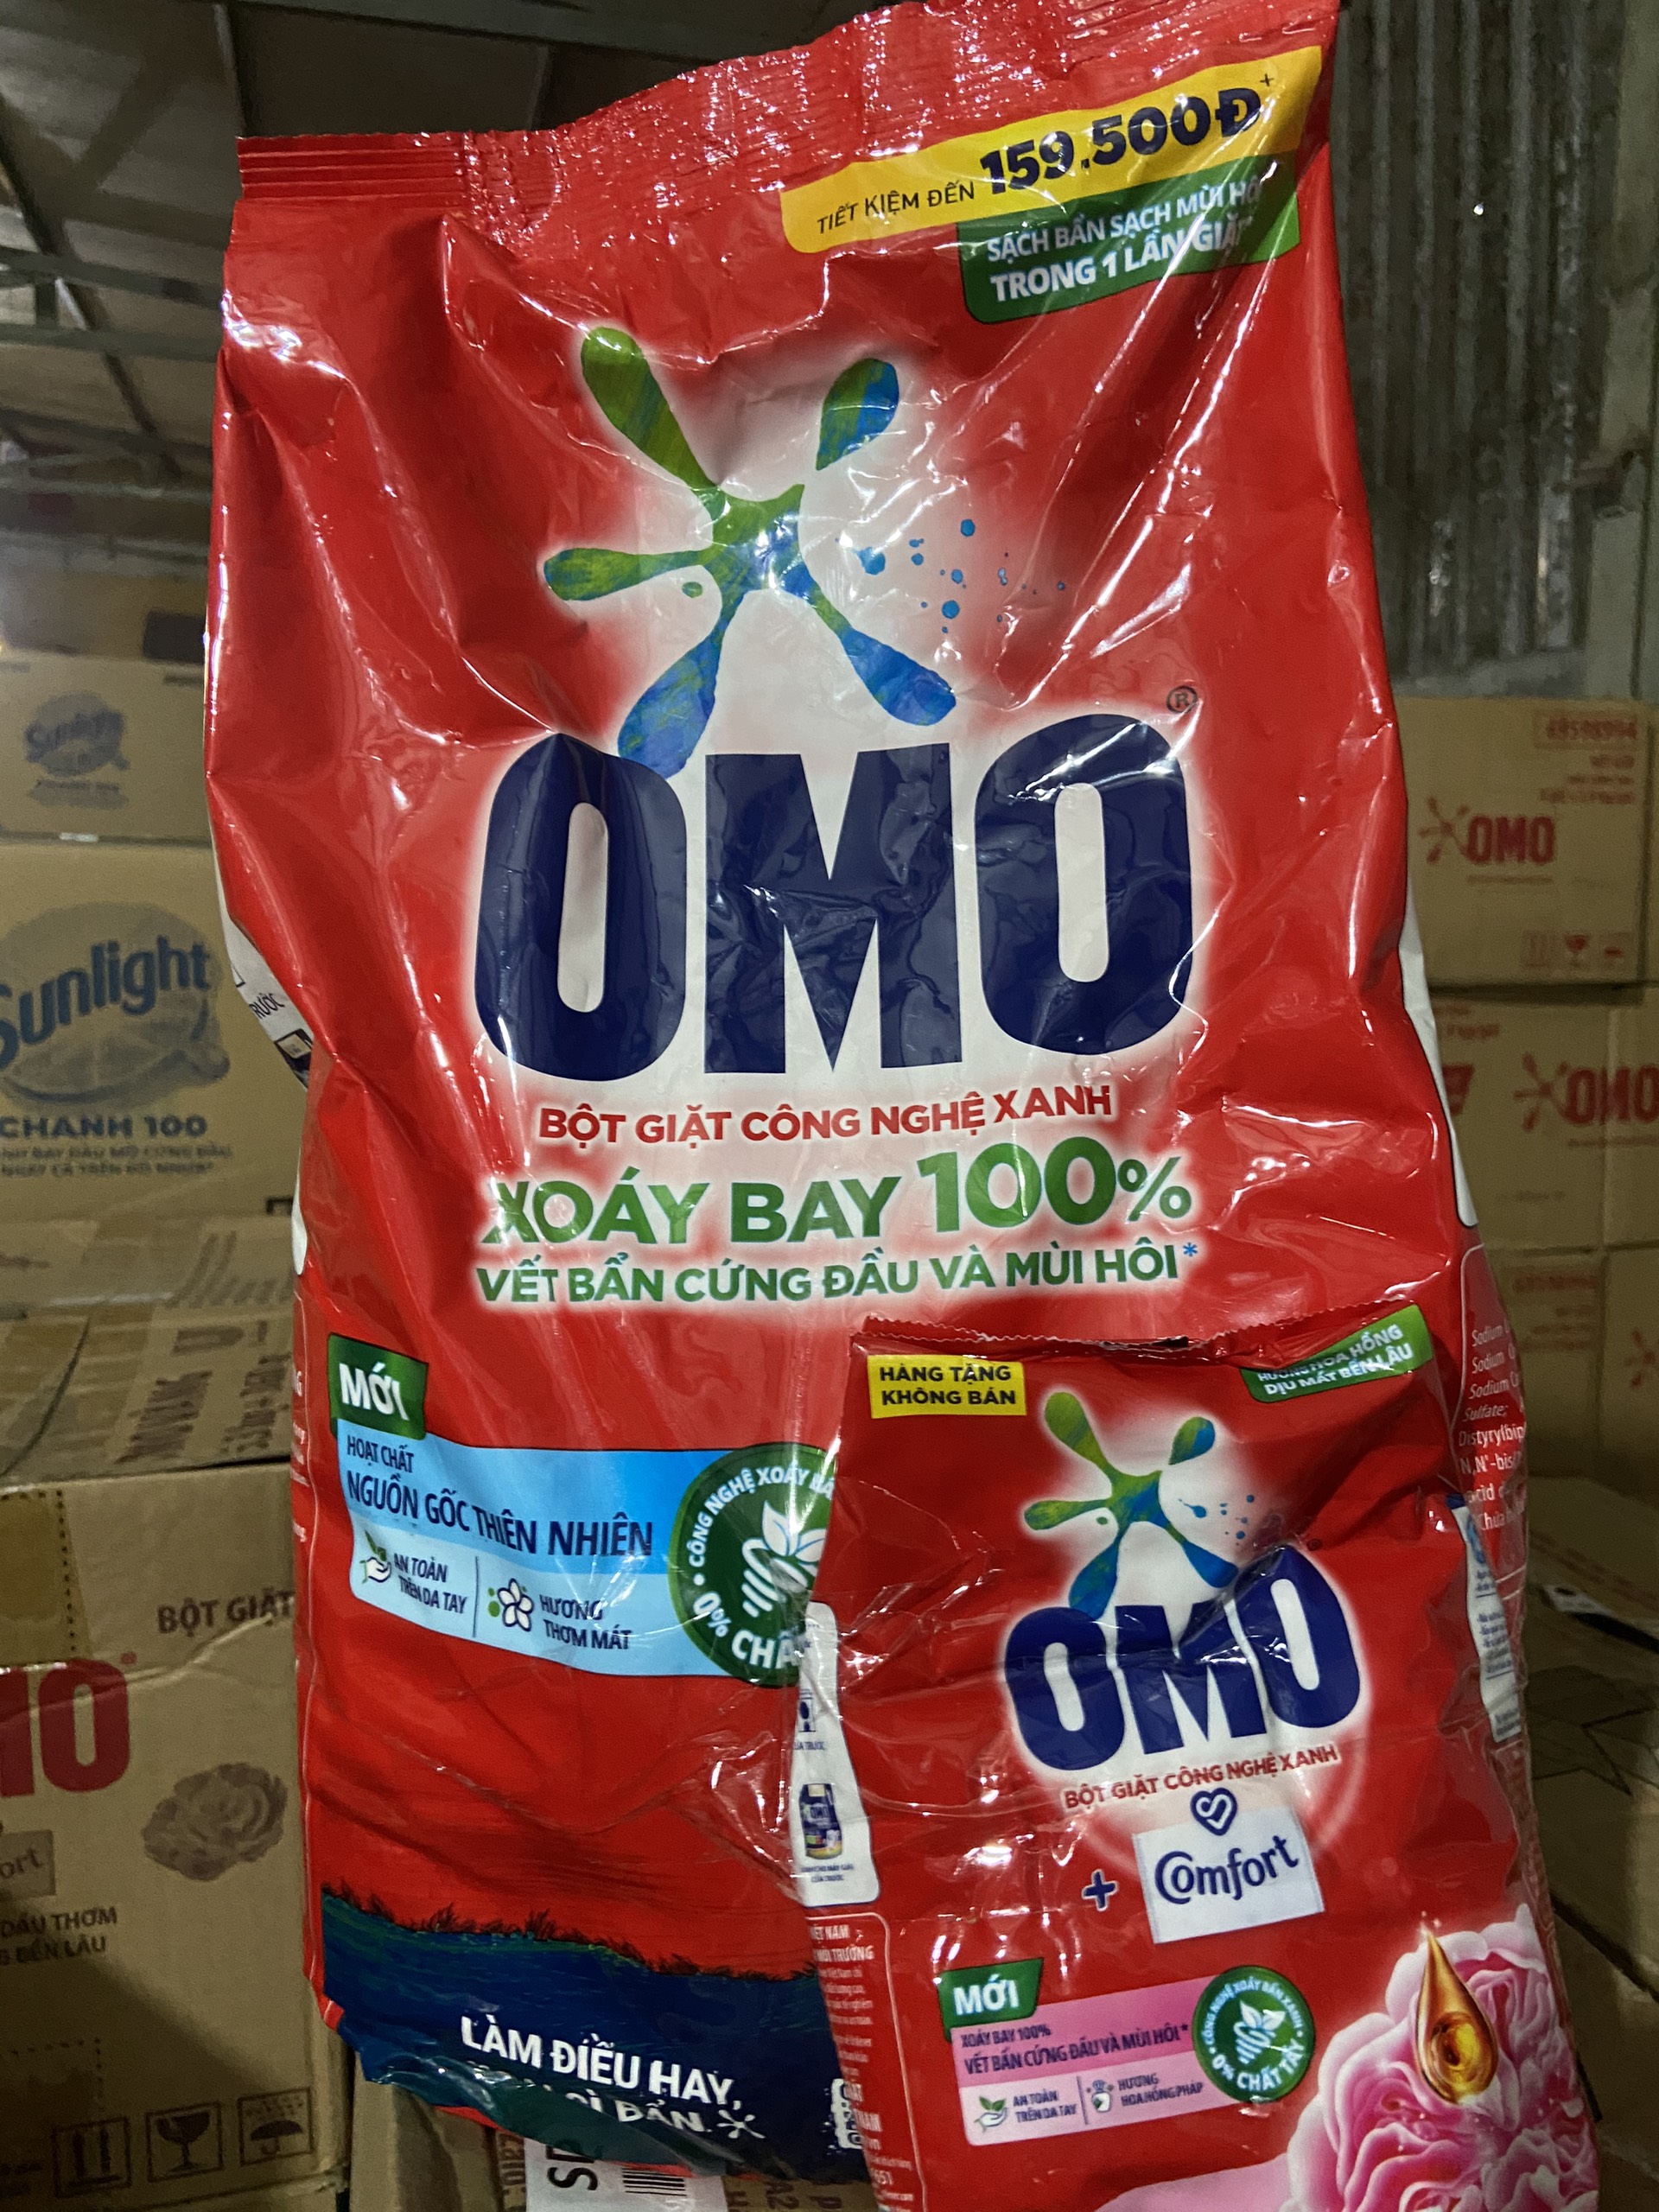 Bột giặt OMO 5,7kg tặng kèm 1 bịch omo comfort 360g